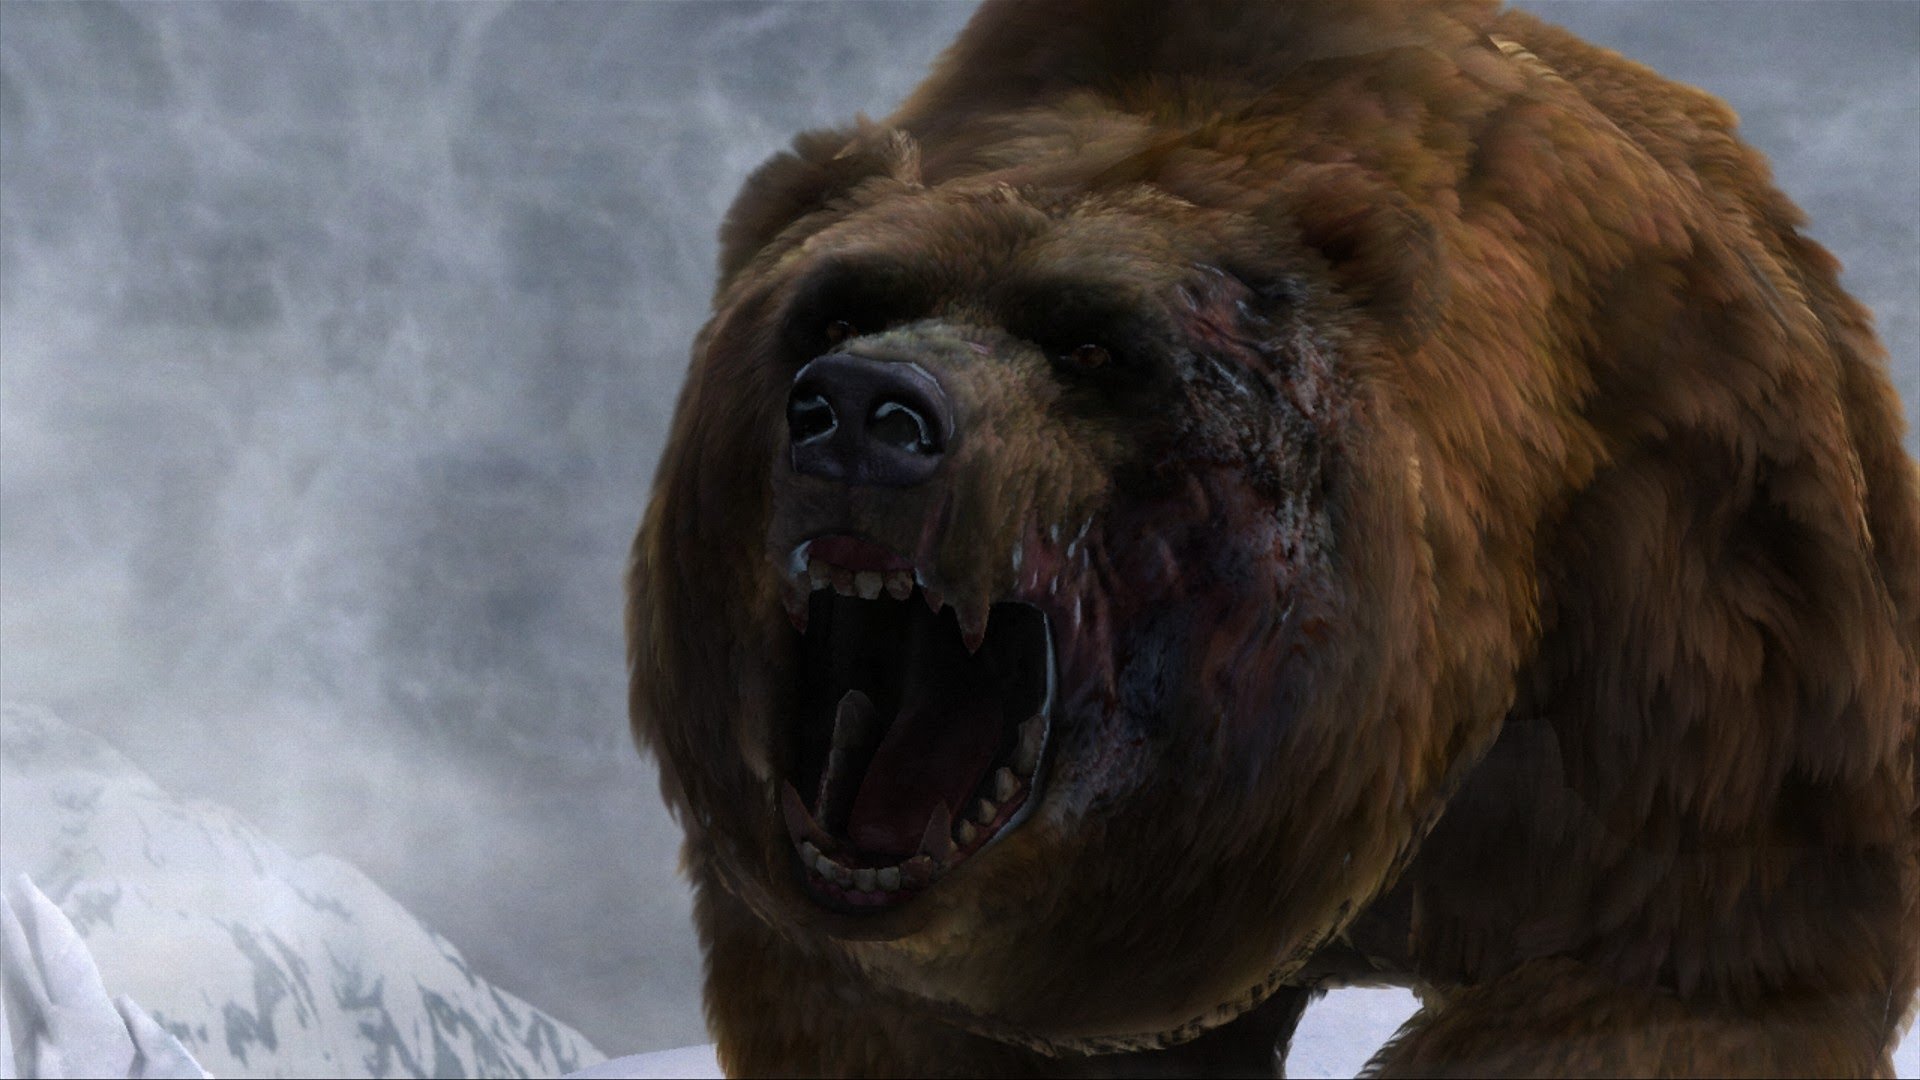 Имя огромного тупого людоеда. Cabela's Dangerous hunts 2013. Кабелас дангероус Хантс 2013. Гигантский Короткомордый медведь. Медведь Гризли оскал.